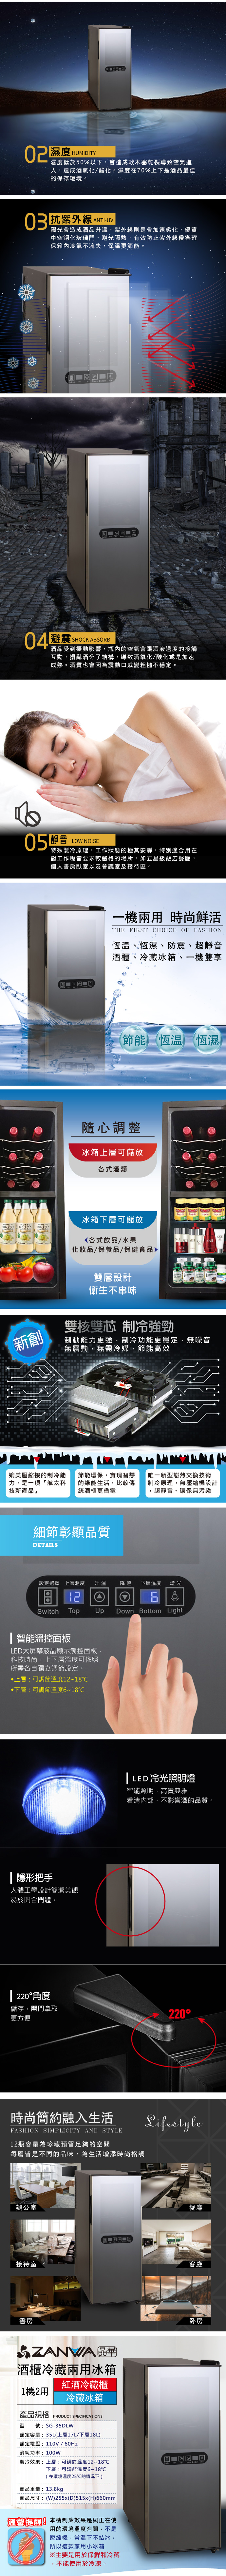       【ZANWA 晶華】35L 變頻式右開單門雙溫控酒櫃/冷藏冰箱/半